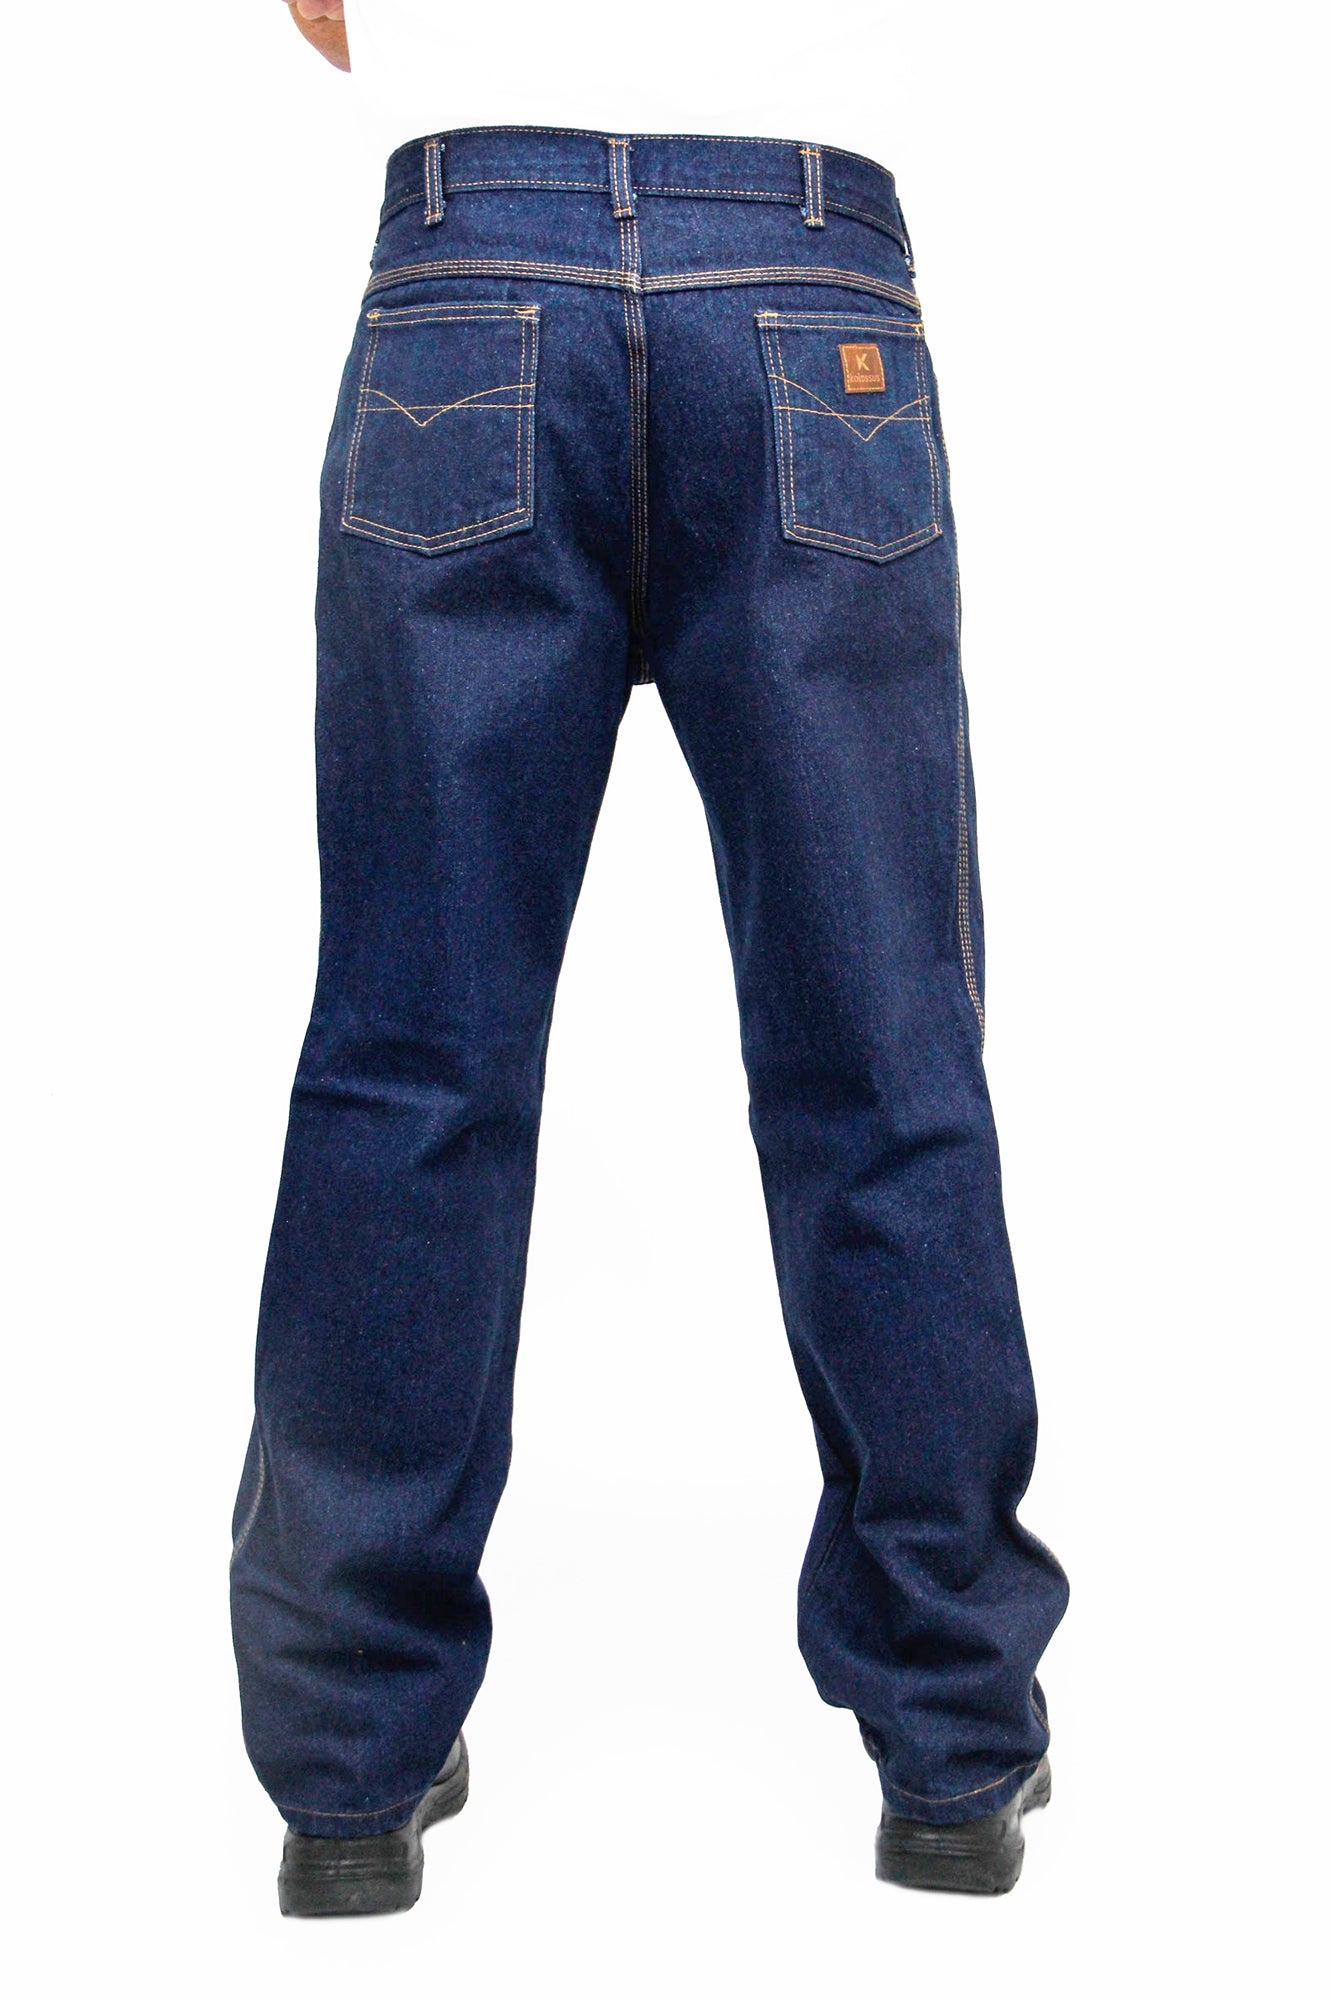 DNC Taped Denim Stretch Jeans (3347) – Budget Workwear